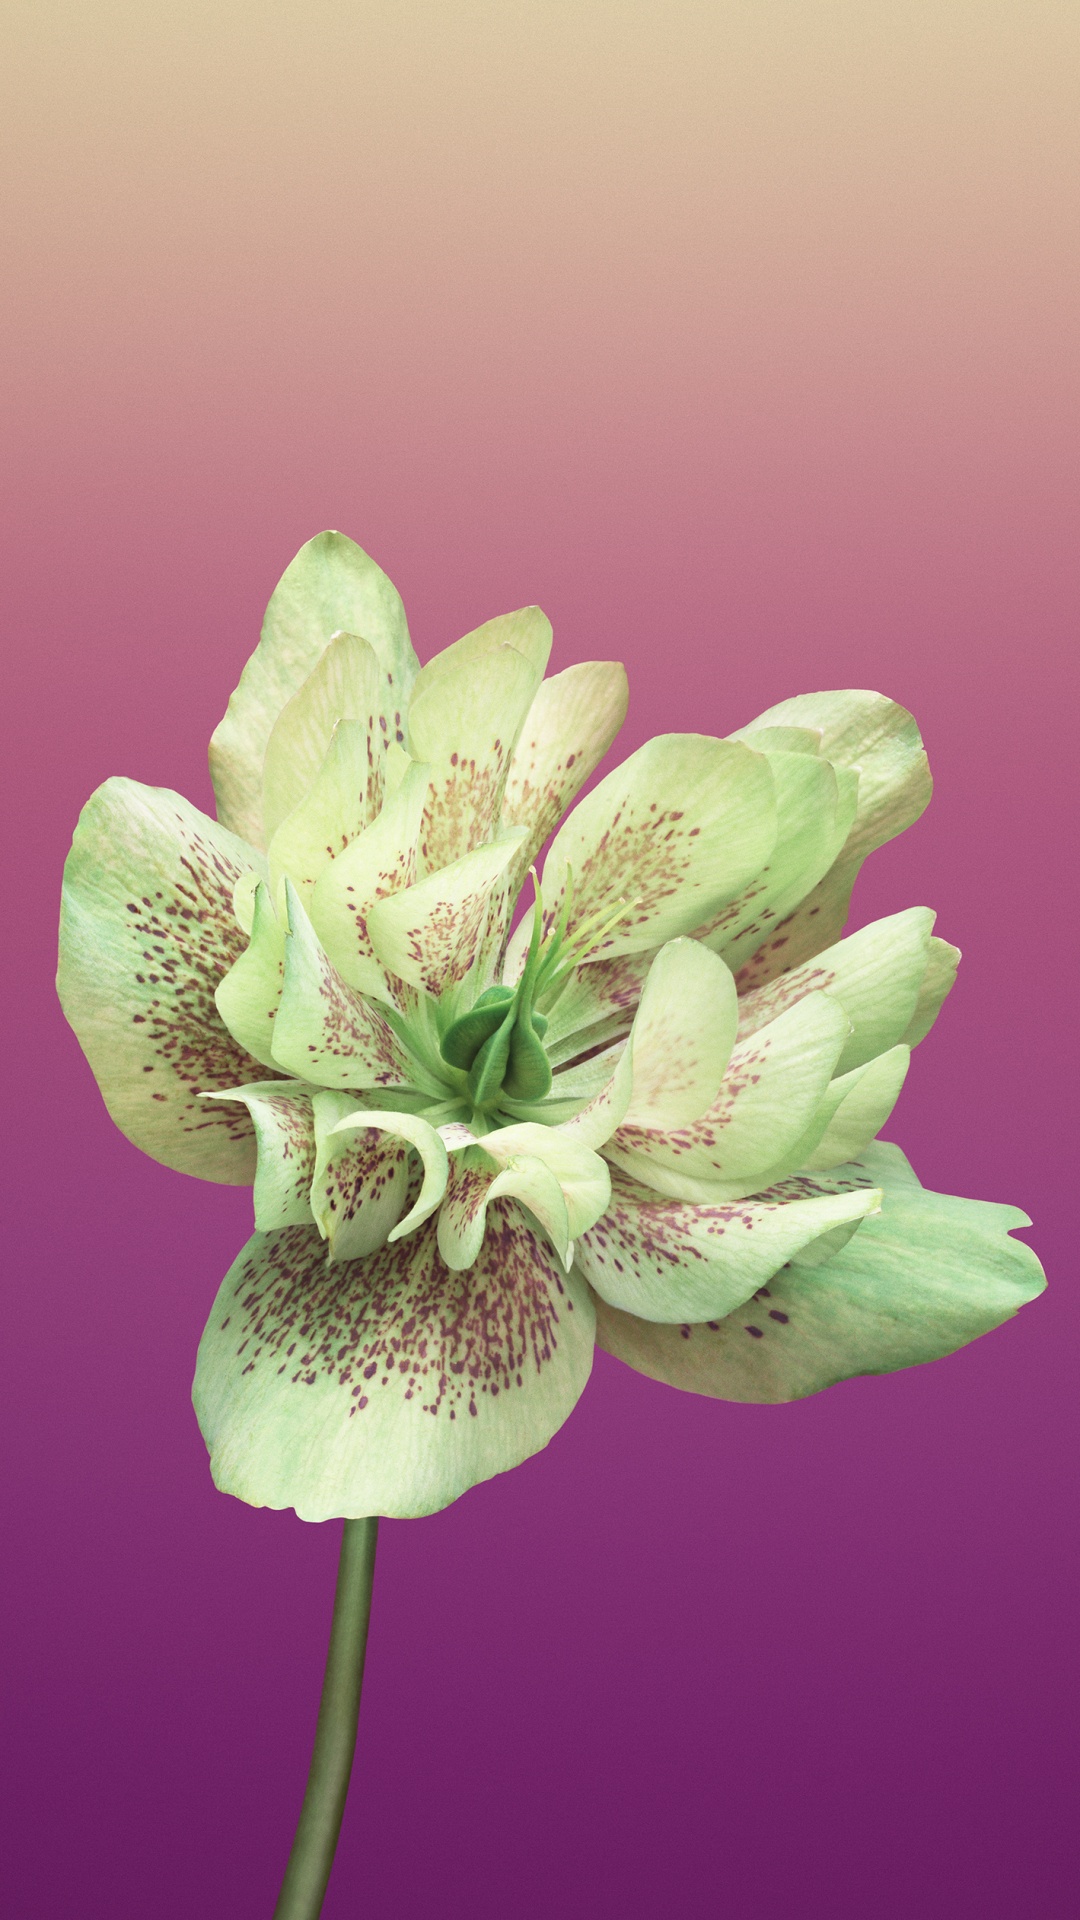 Purple Flower in Macro Shot. Wallpaper in 1080x1920 Resolution